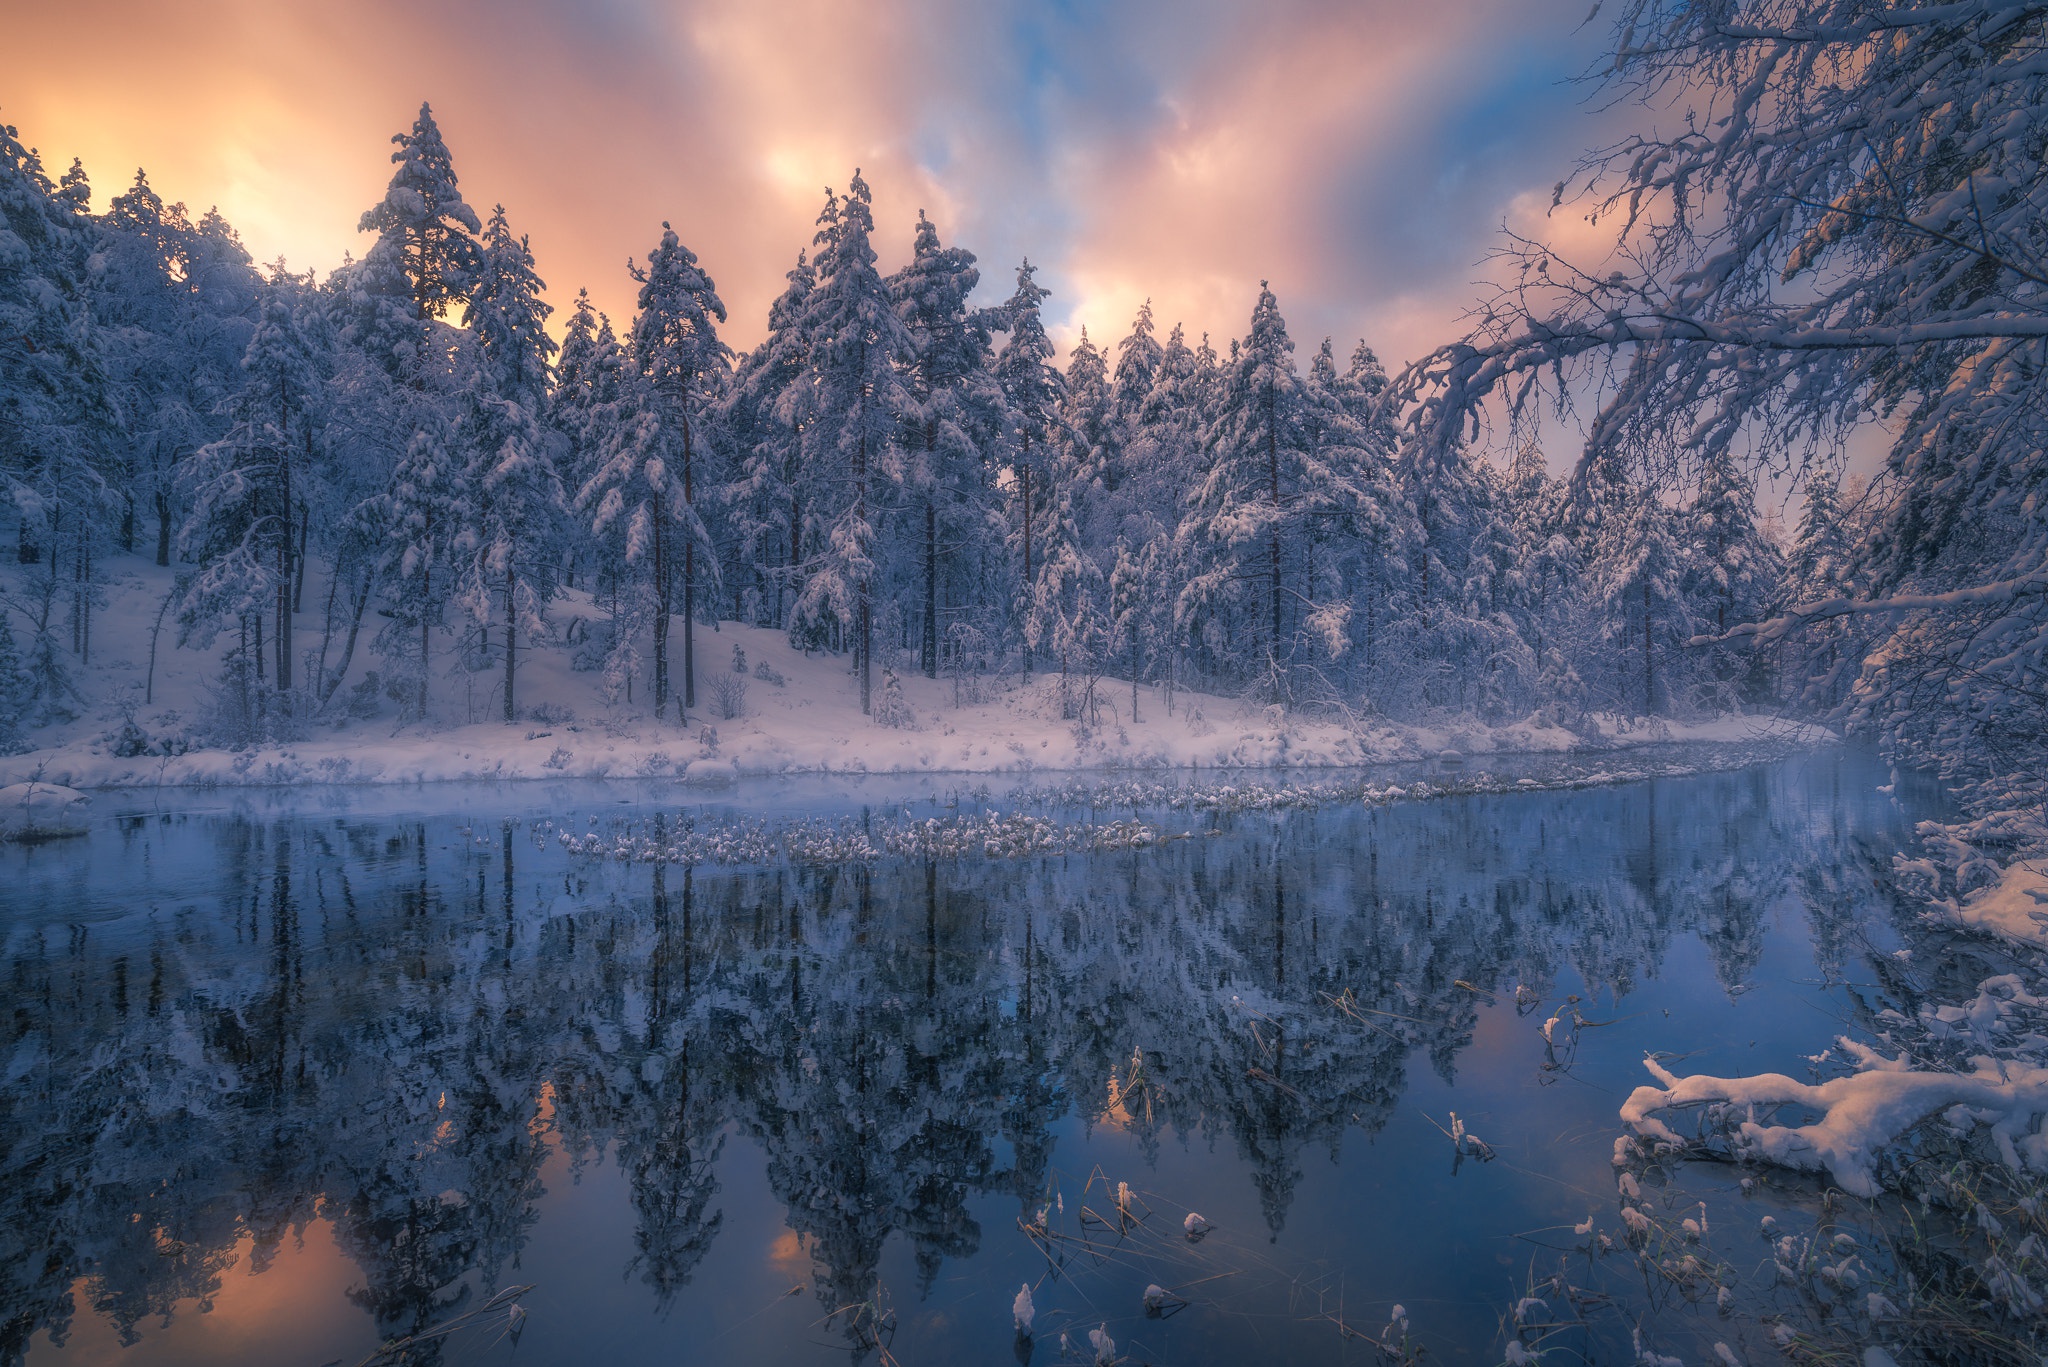 Скачать картинку Зима, Природа, Река, Снег, Отражение, Дерево, Земля/природа в телефон бесплатно.